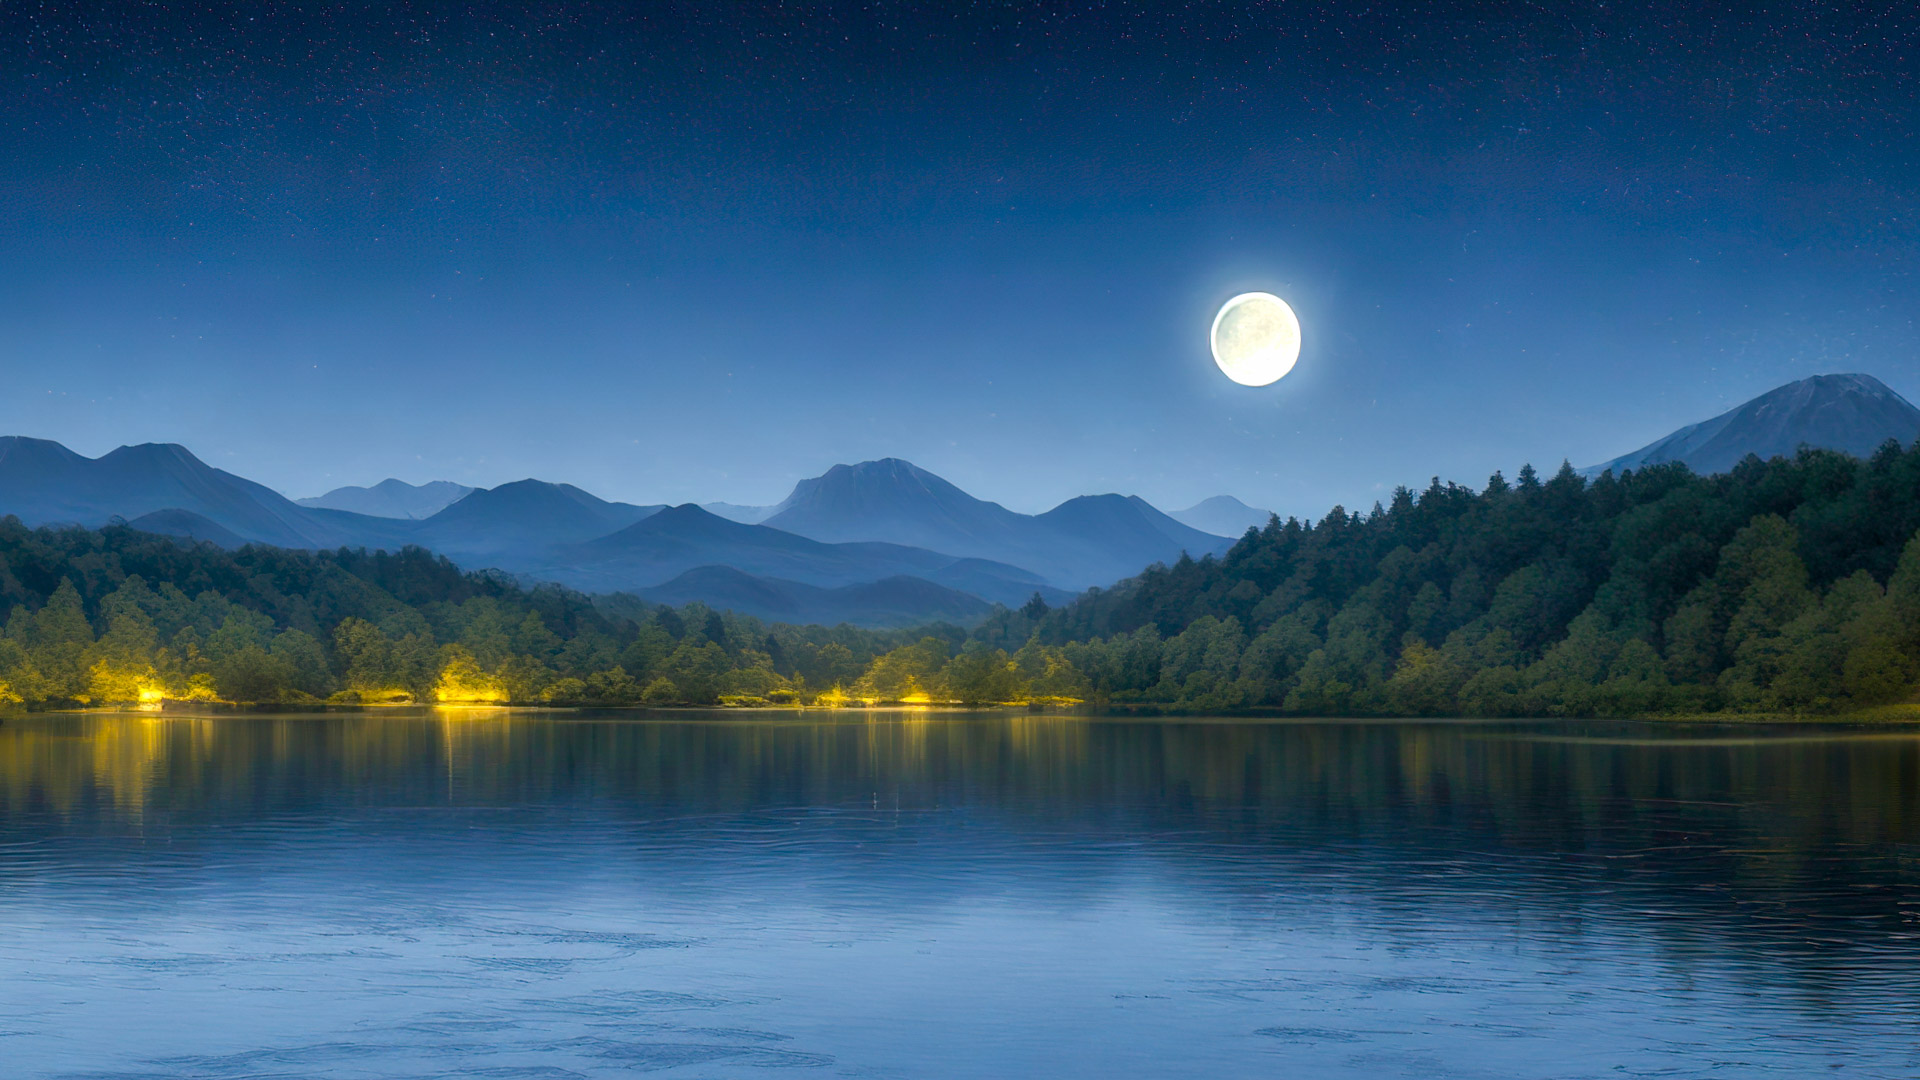 Transformez l'écran de votre PC avec notre fond d'écran nature en Full HD, 1080p, présentant une scène paisible au bord d'un lac sous un ciel étoilé, avec une pleine lune se reflétant à la surface de l'eau.